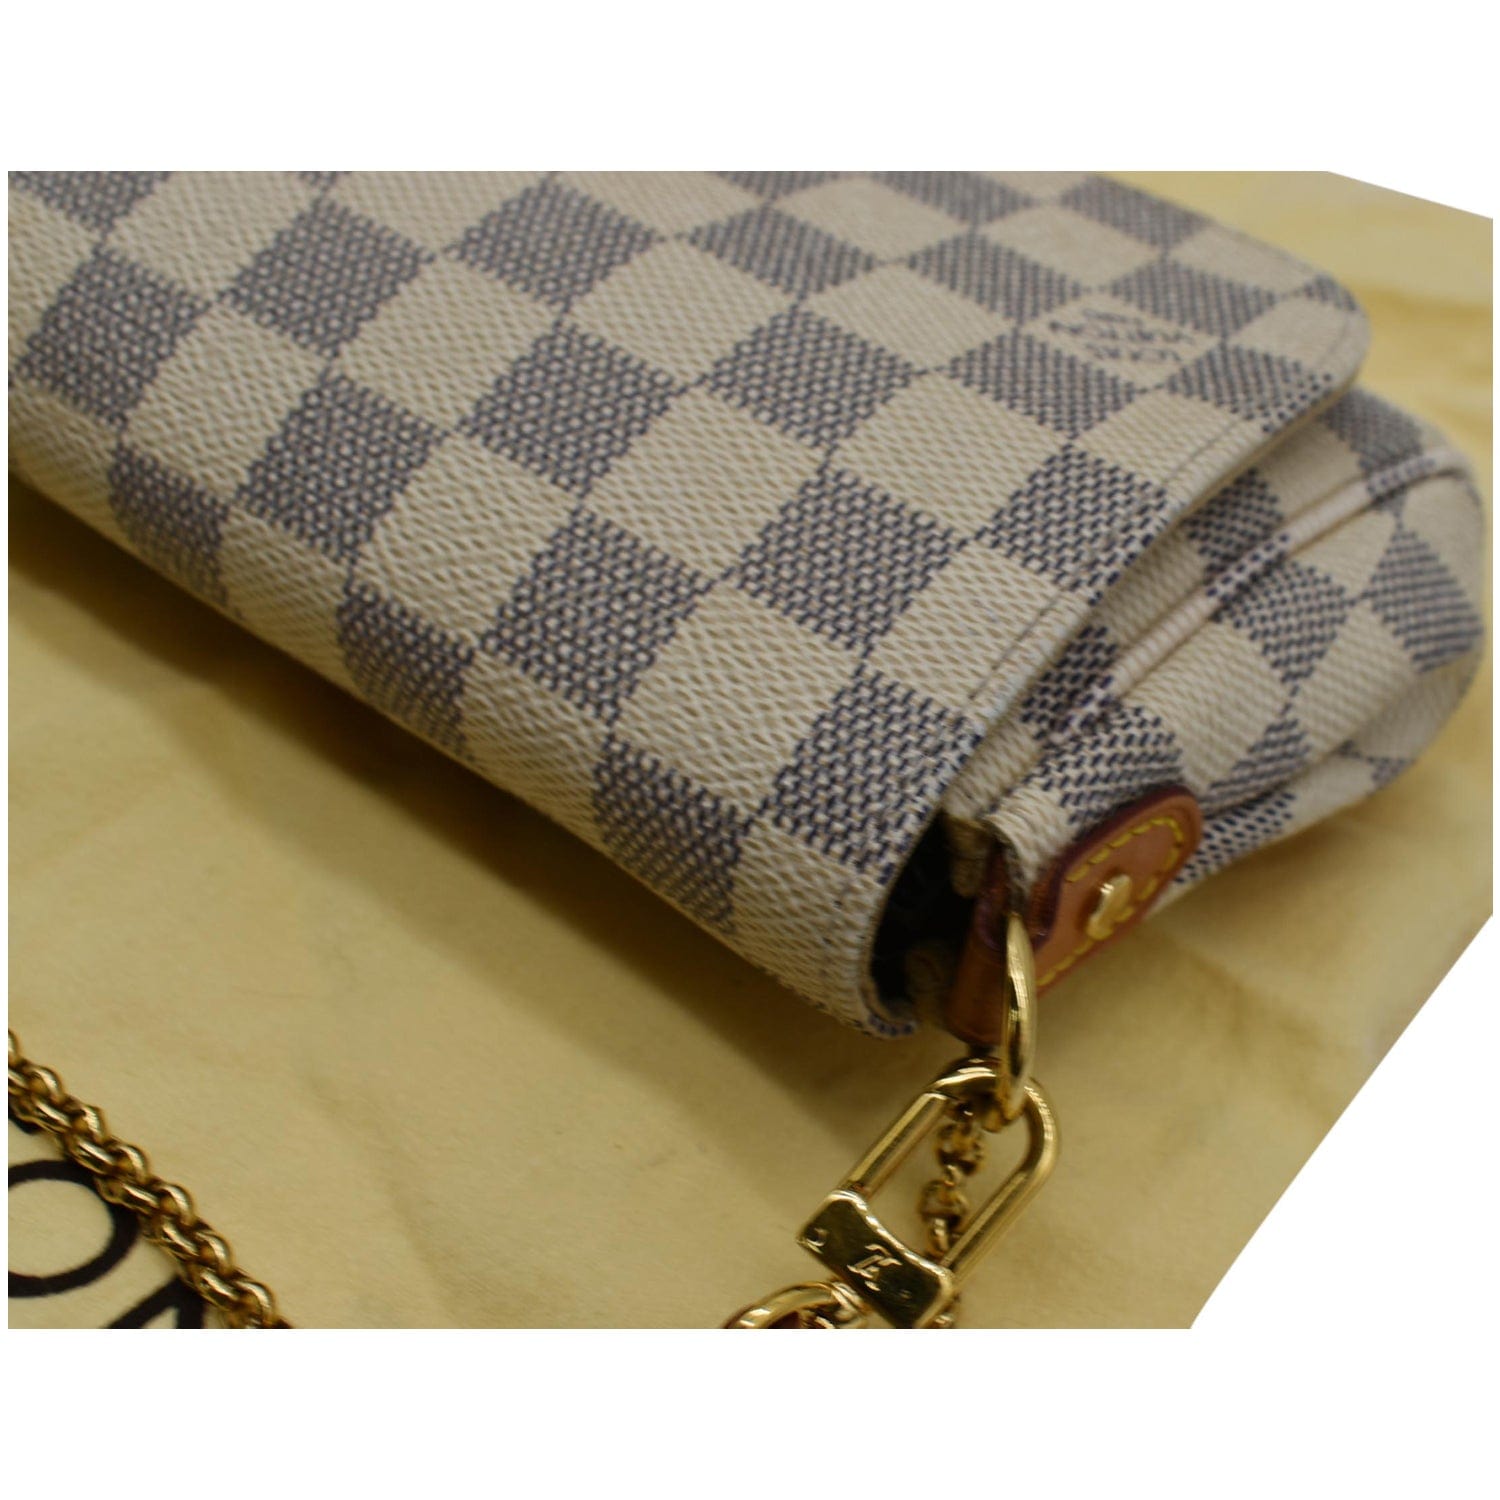 Louis Vuitton Damier Azur Favorite MM - Blue Mini Bags, Handbags - LOU82914